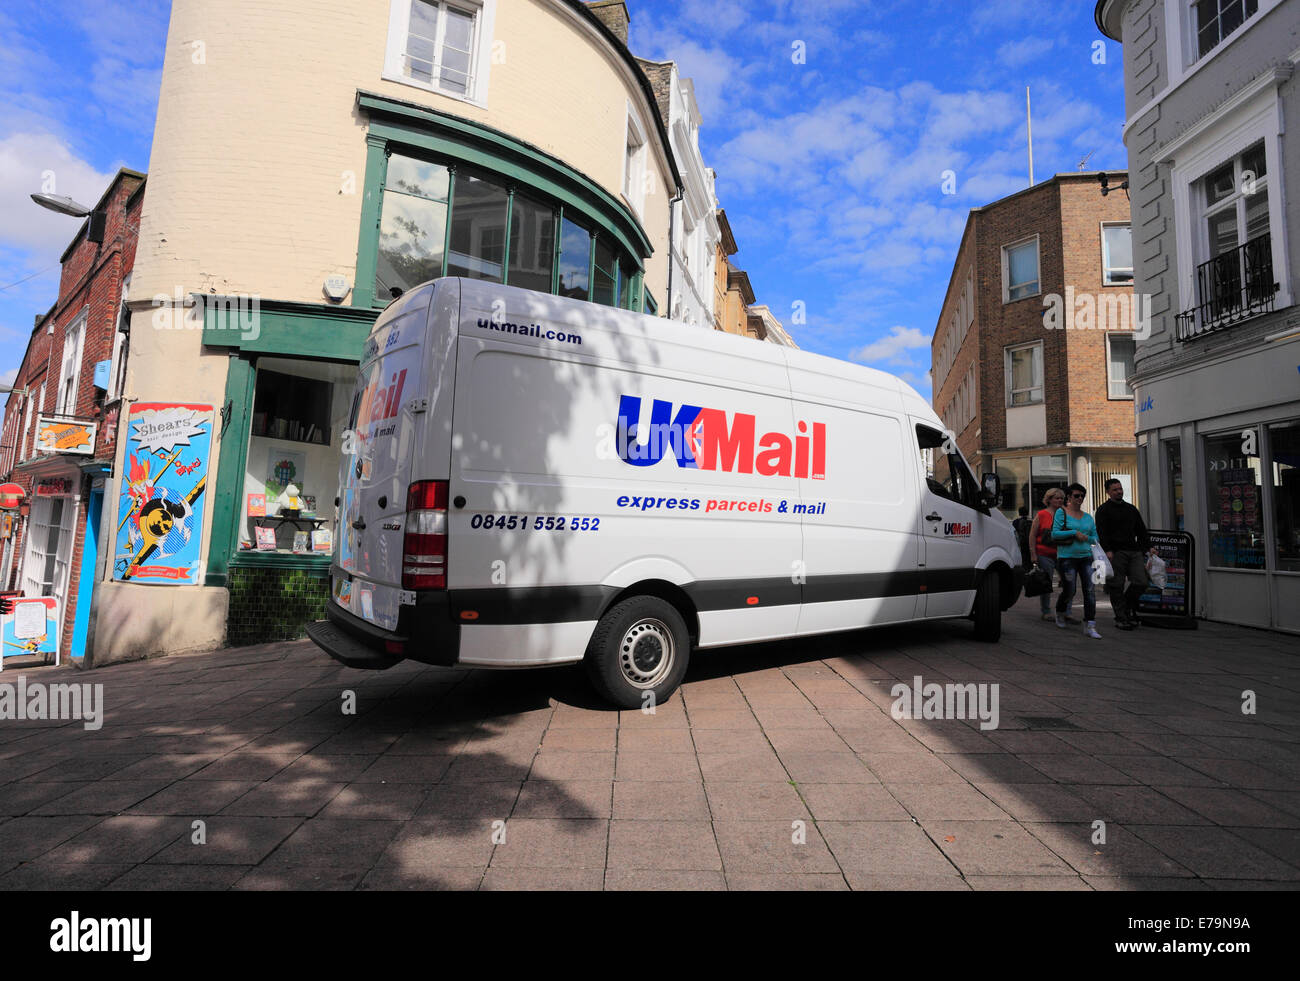 Consegna UKMail van su un pedestrain street nel centro città di Norwich. Foto Stock